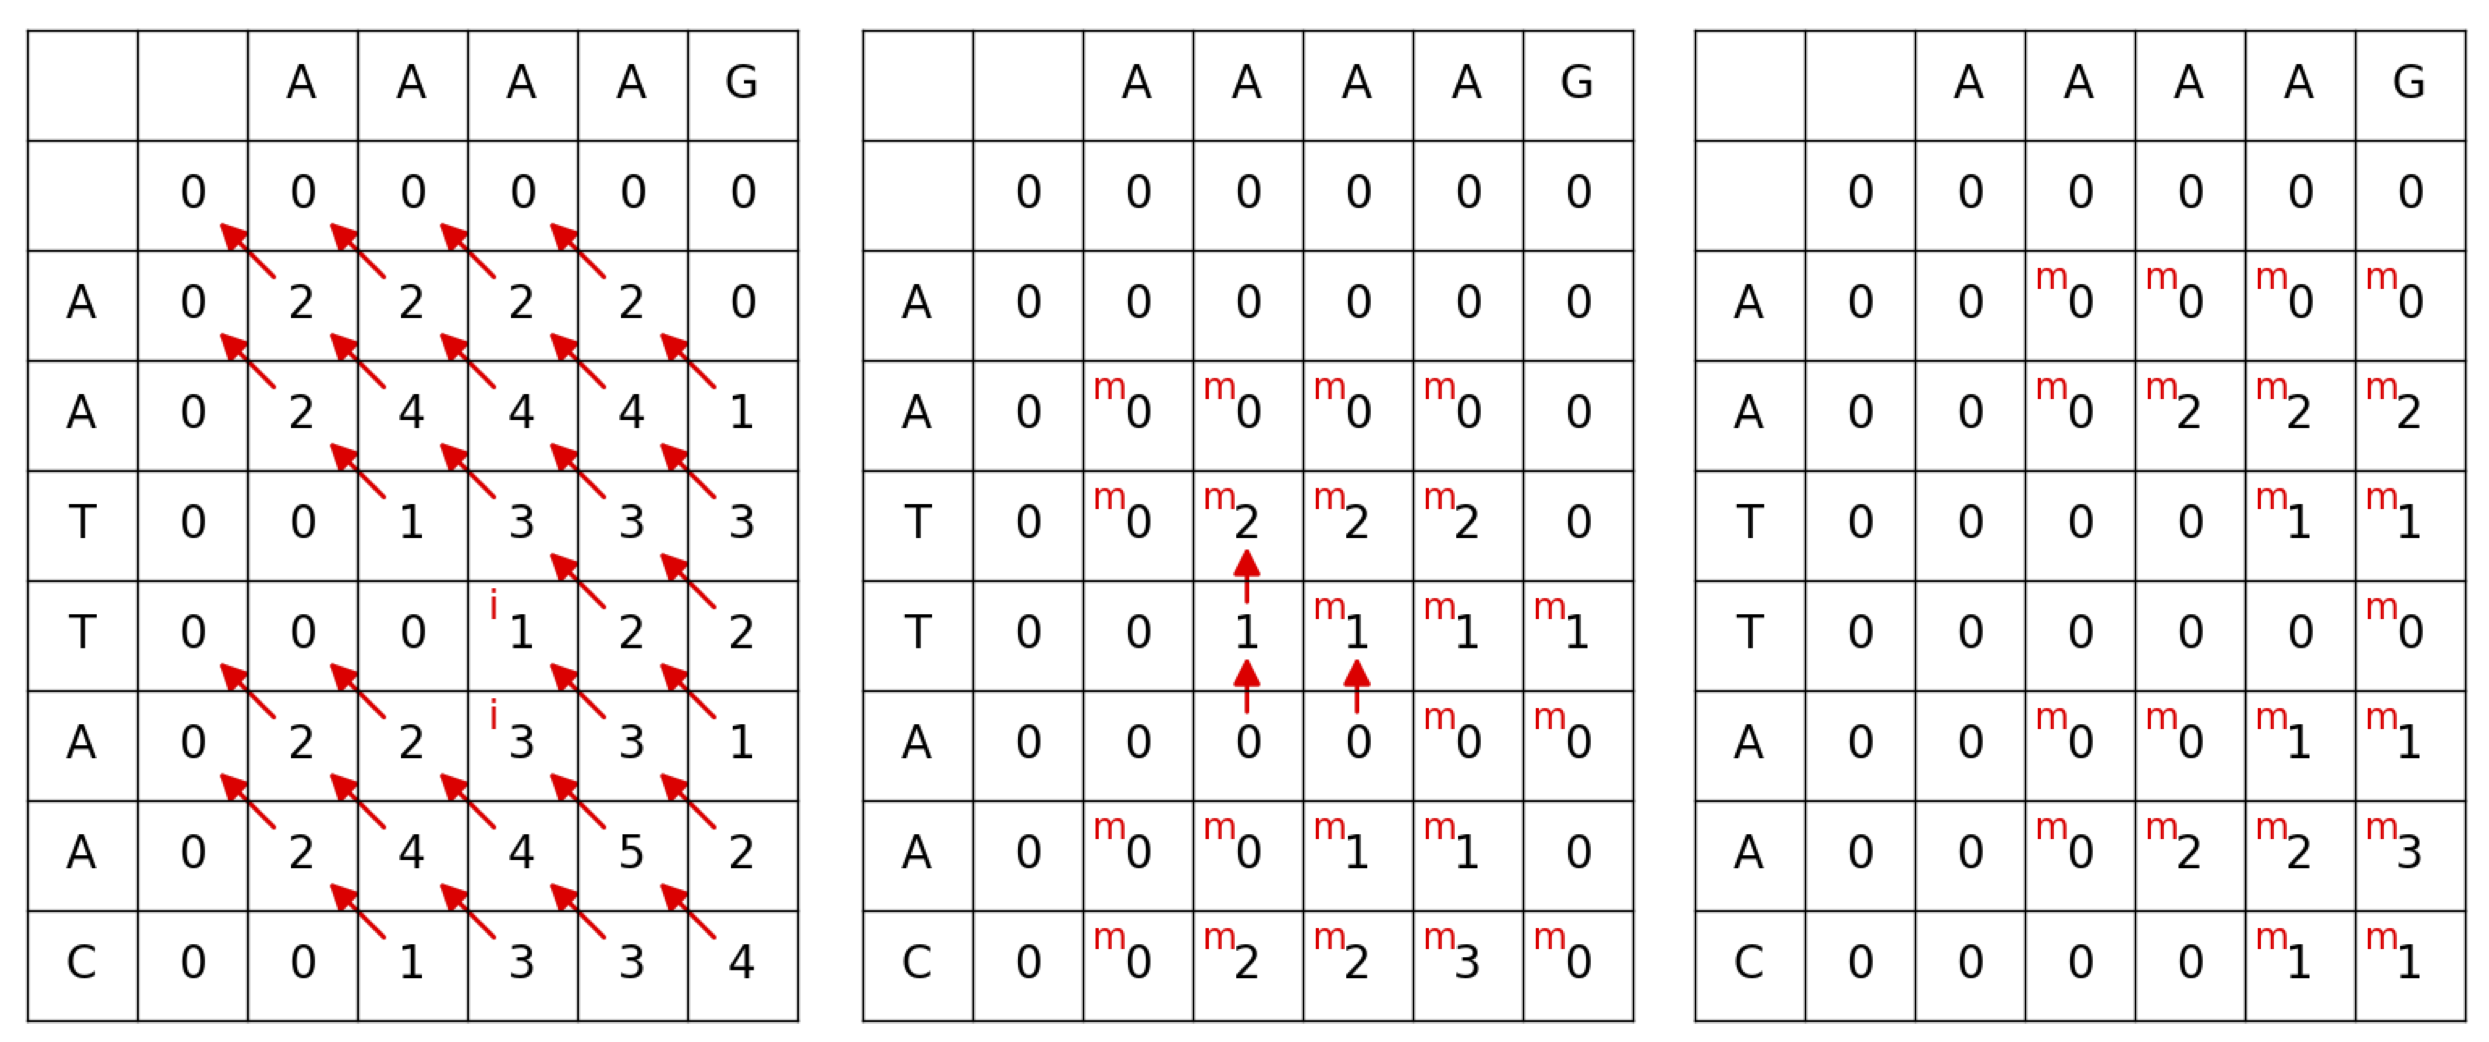 Gotoh algorithm tables